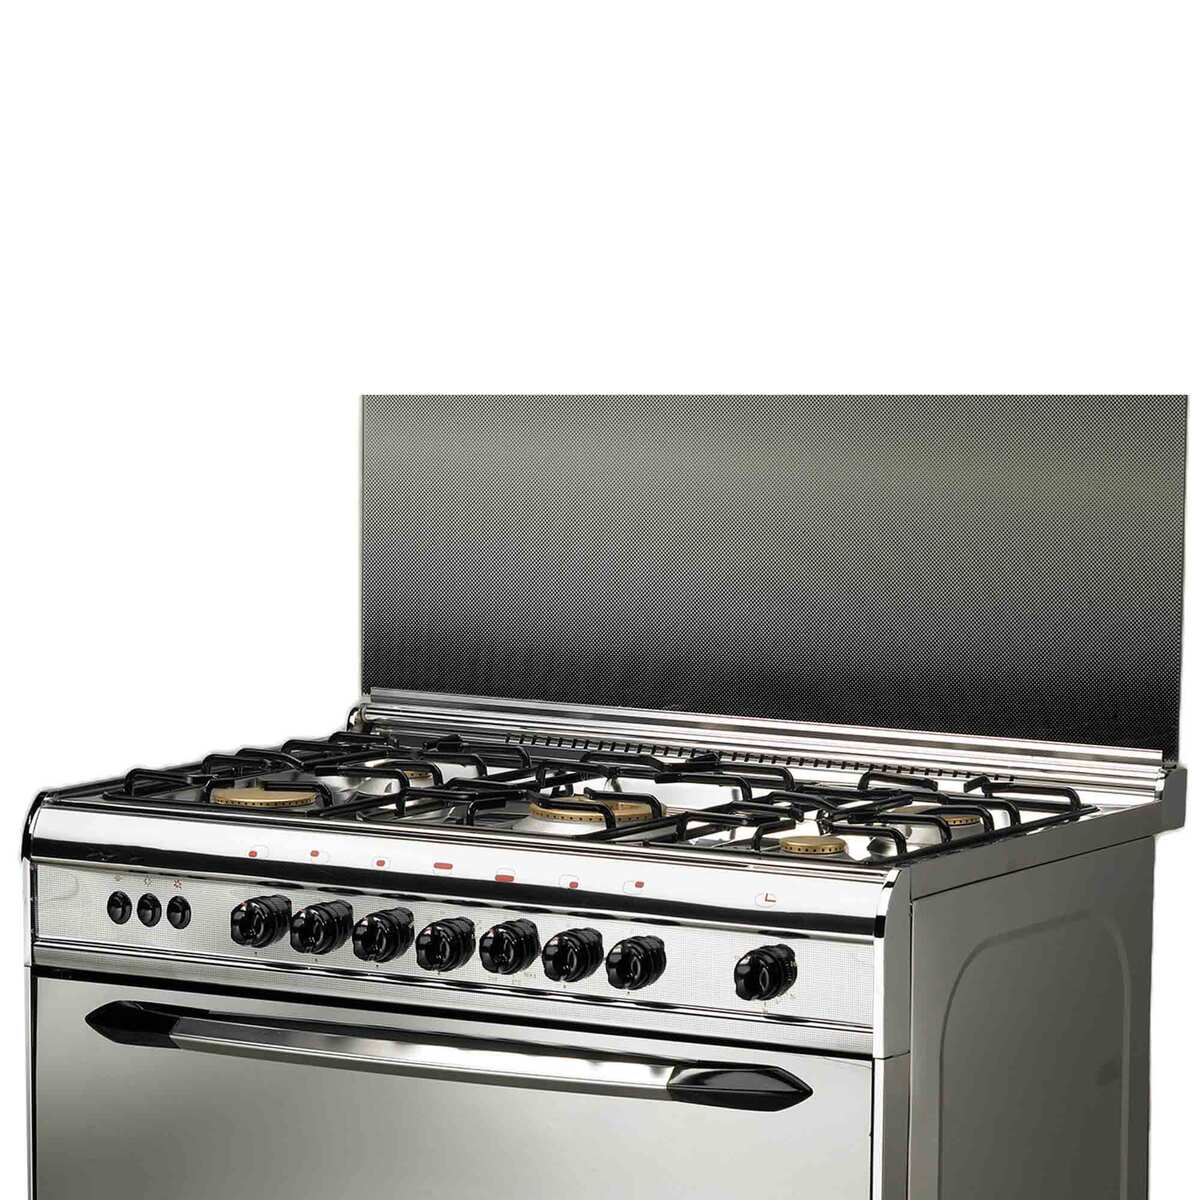 Prolux Cooking Range PDUG96S5 5 Burner 90x60cm